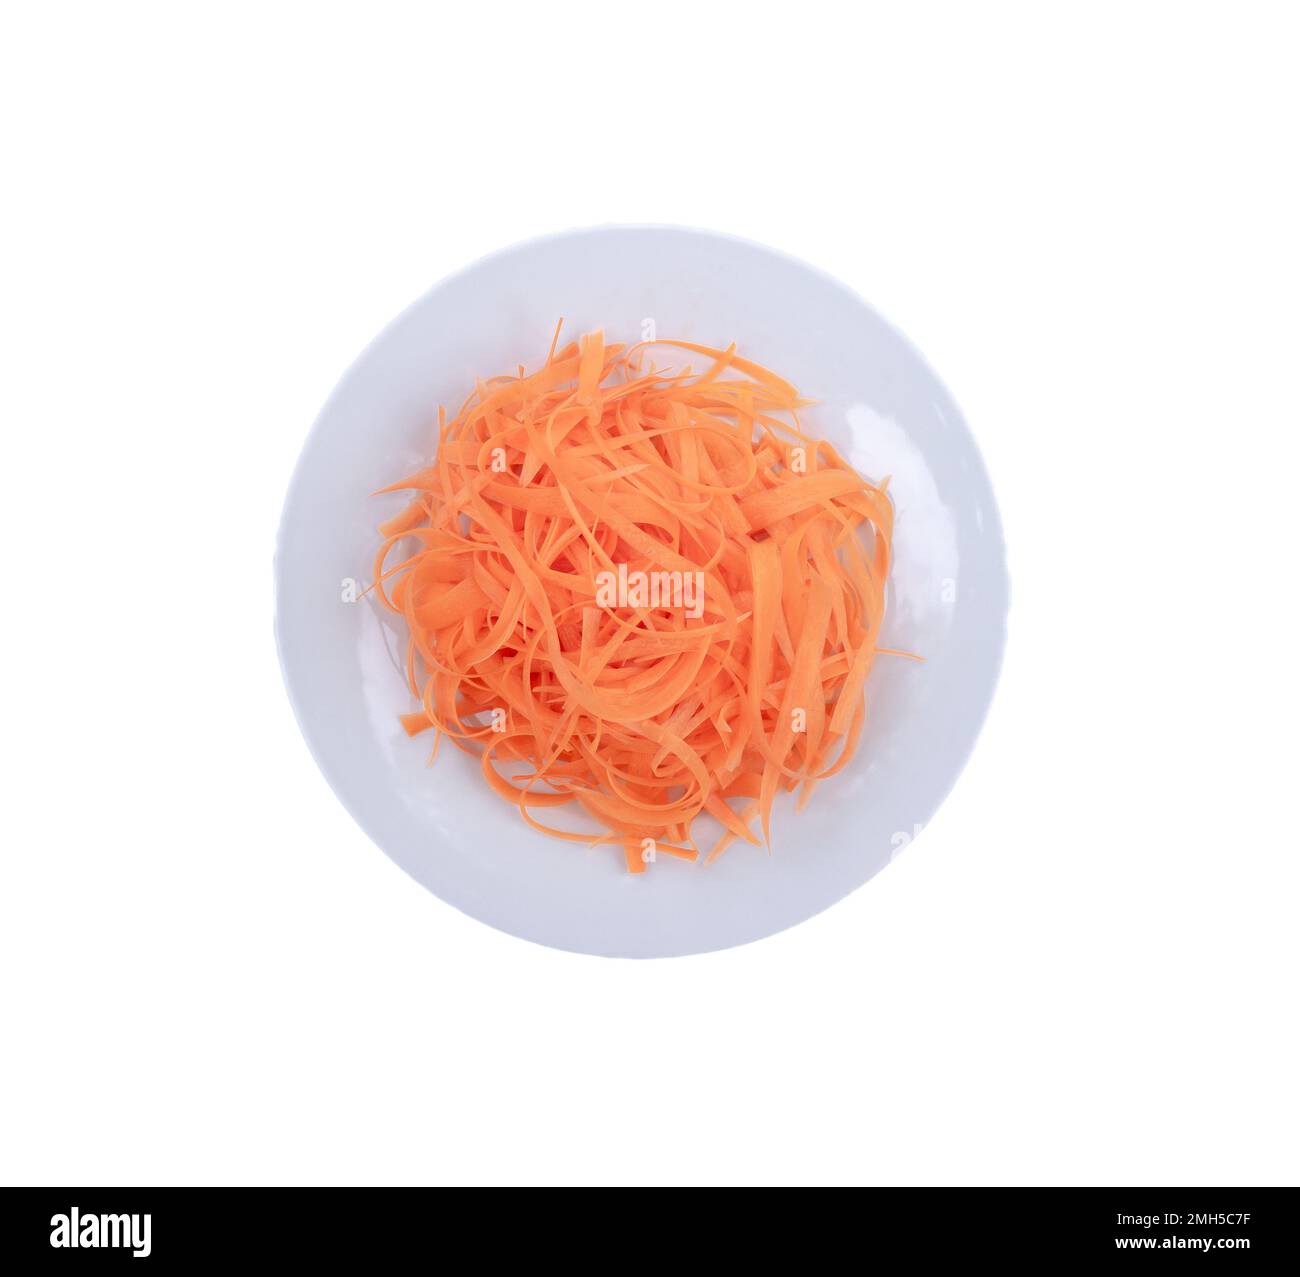 Carota tagliata su piatto bianco con foto e Vectors per idea design. La carota fresca viene affettata per preparare alcuni pasti come insalata e riso Foto Stock